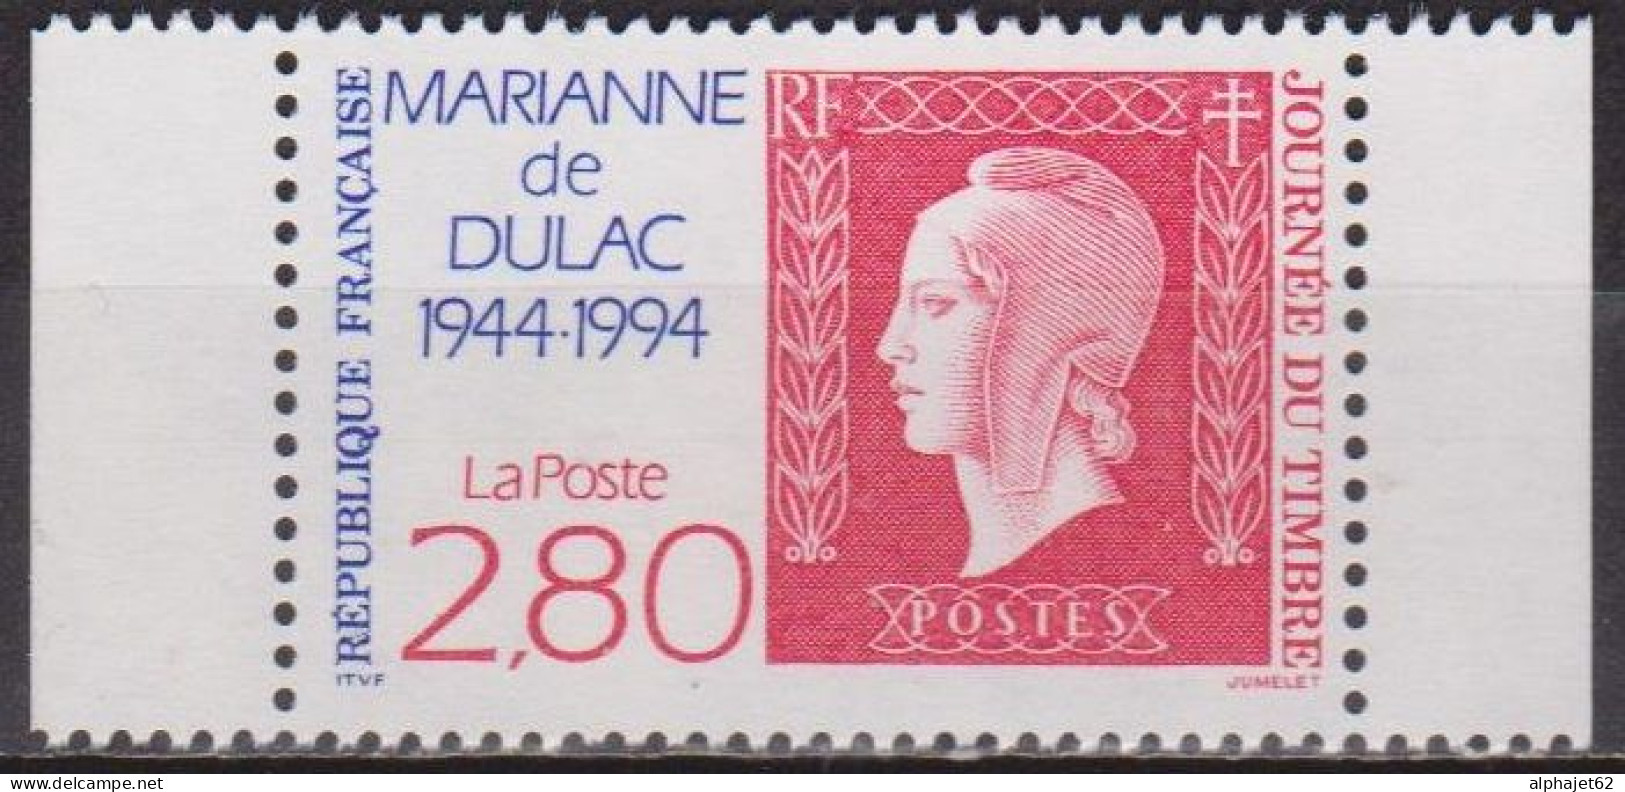 Marianne De Dulac - FRANCE - Cinquantenaire, Timbre De Carnet: N° 2863 A **  - 1994 - Ungebraucht